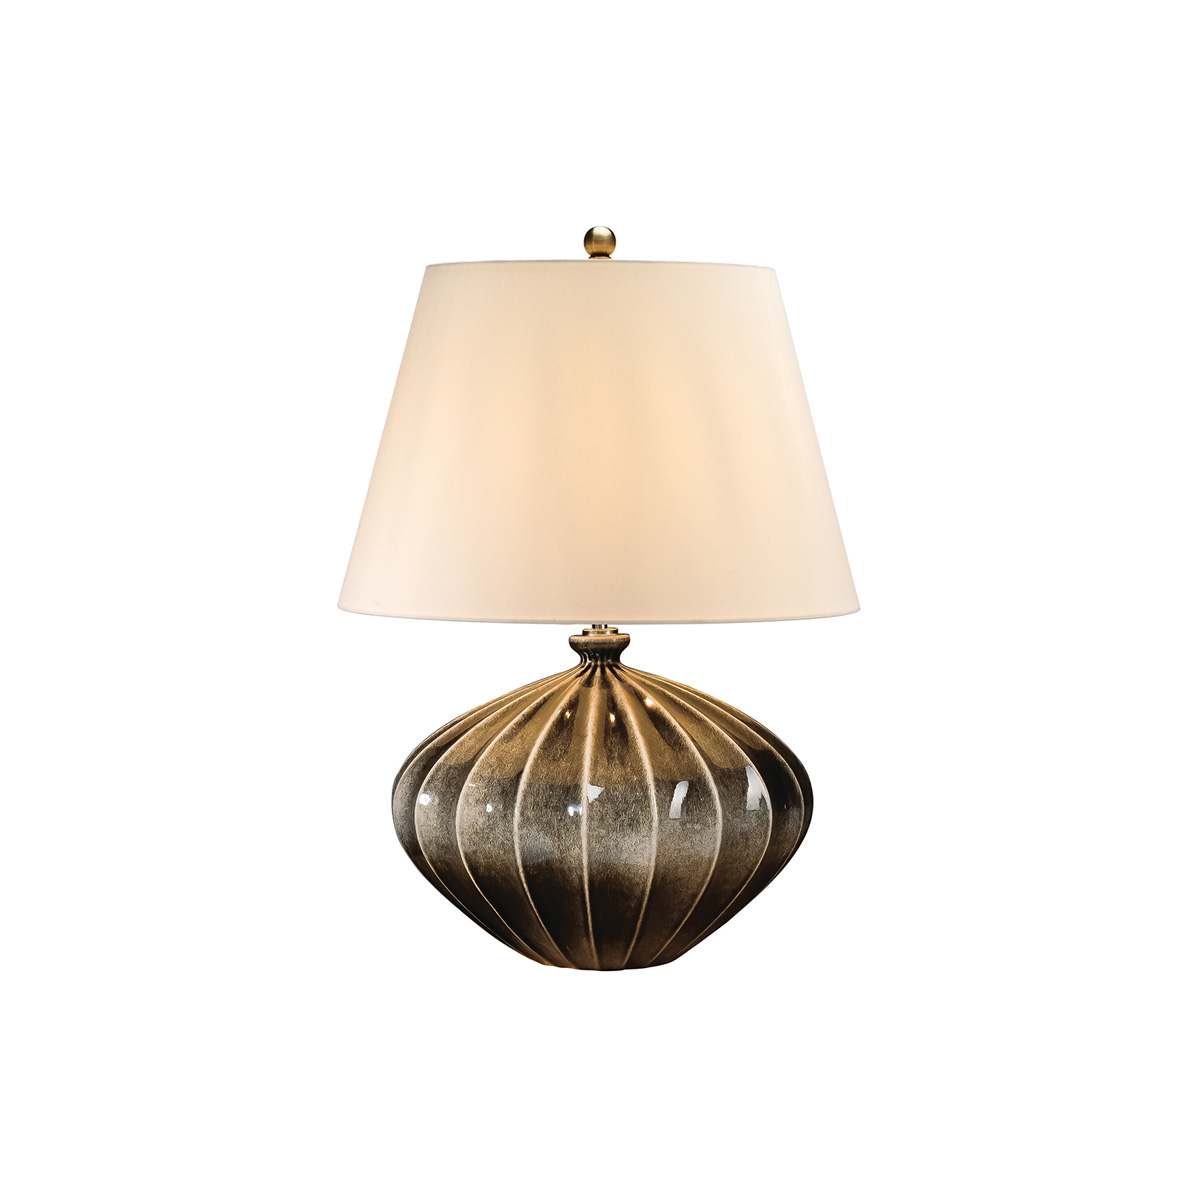 Настольная лампа RIB-PUMPKIN-TL. Бренд: Elstead Lighting. Настольные лампы